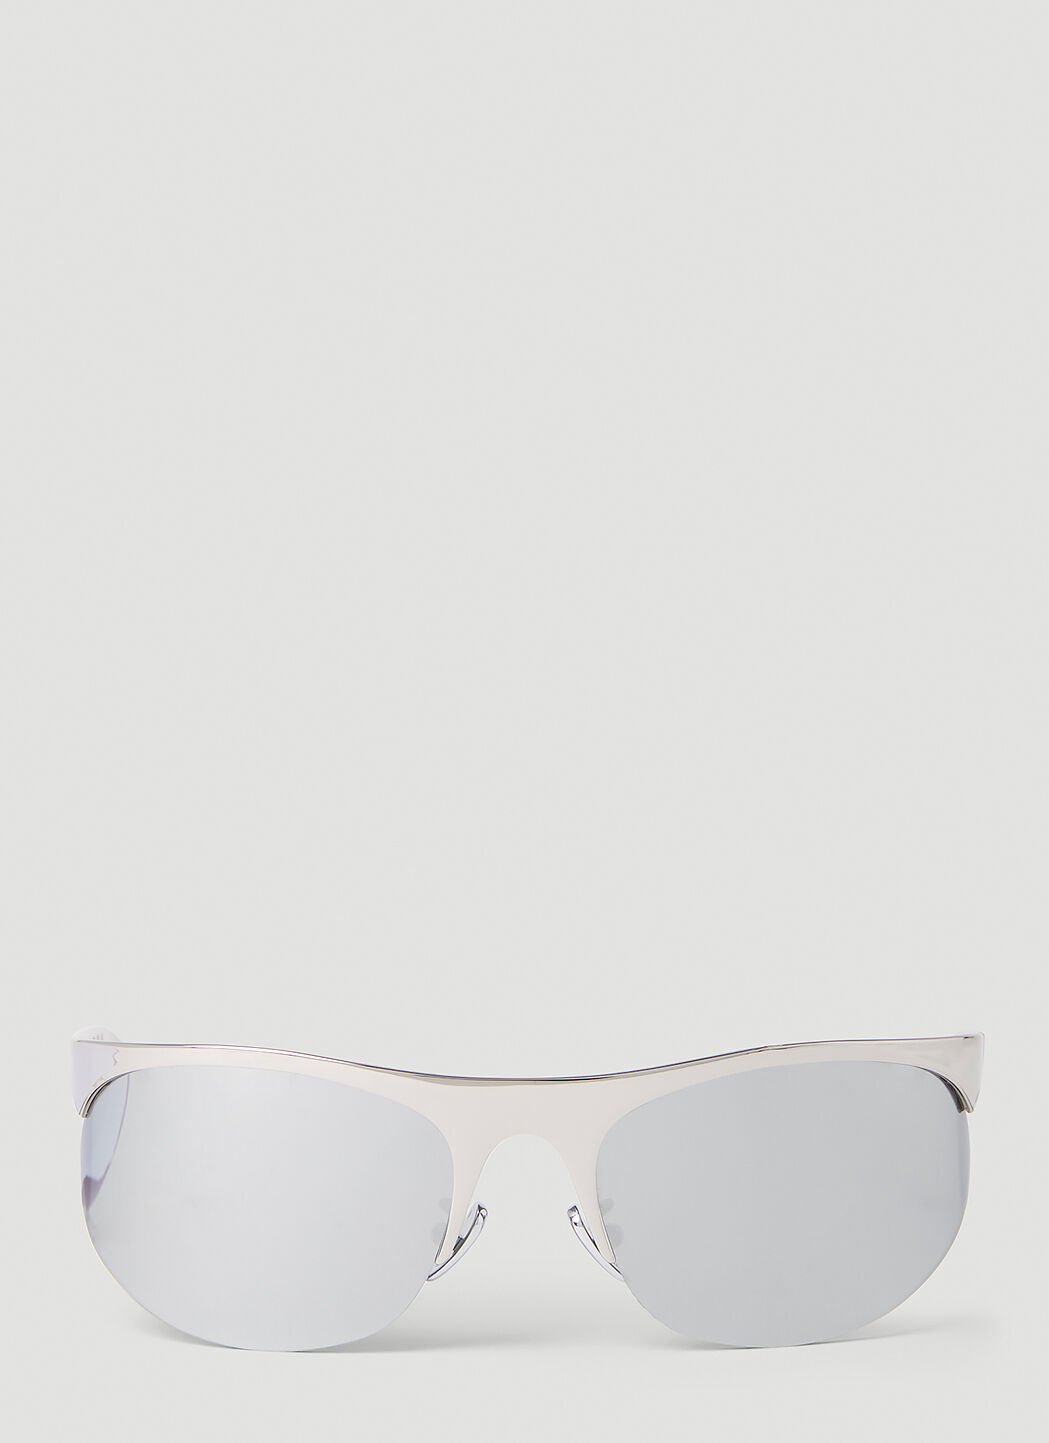 Marni Salar de Uyuni Sunglasses Navy mni0151035